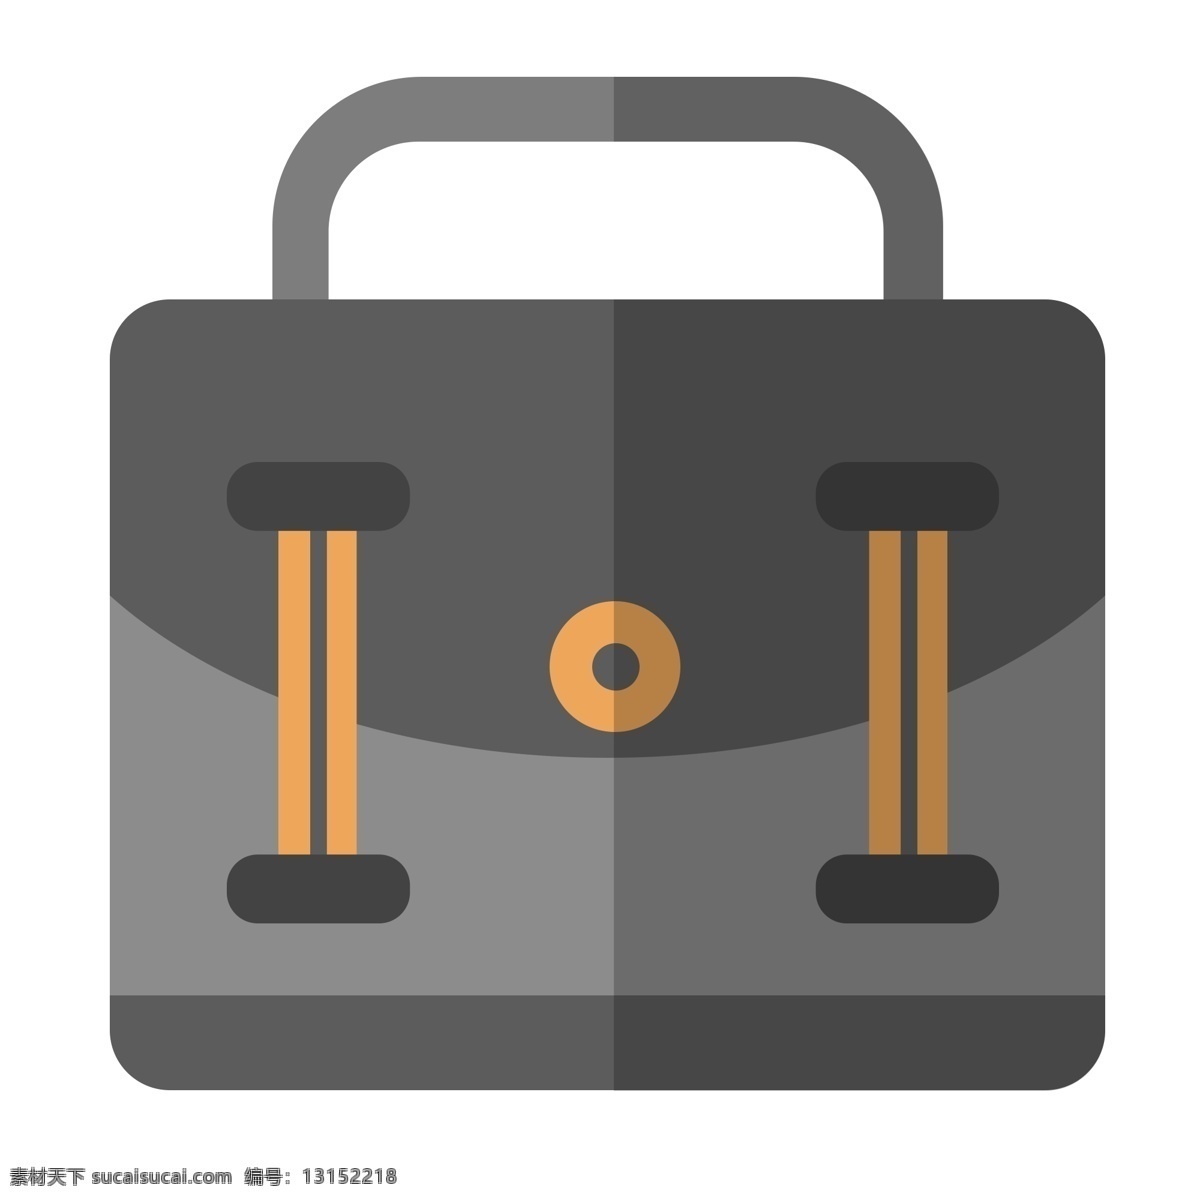 灰色 上班 公文包 可以 装 平时 使用 东西 灰色的 简历 上班的背包 装文件的包 比较正式